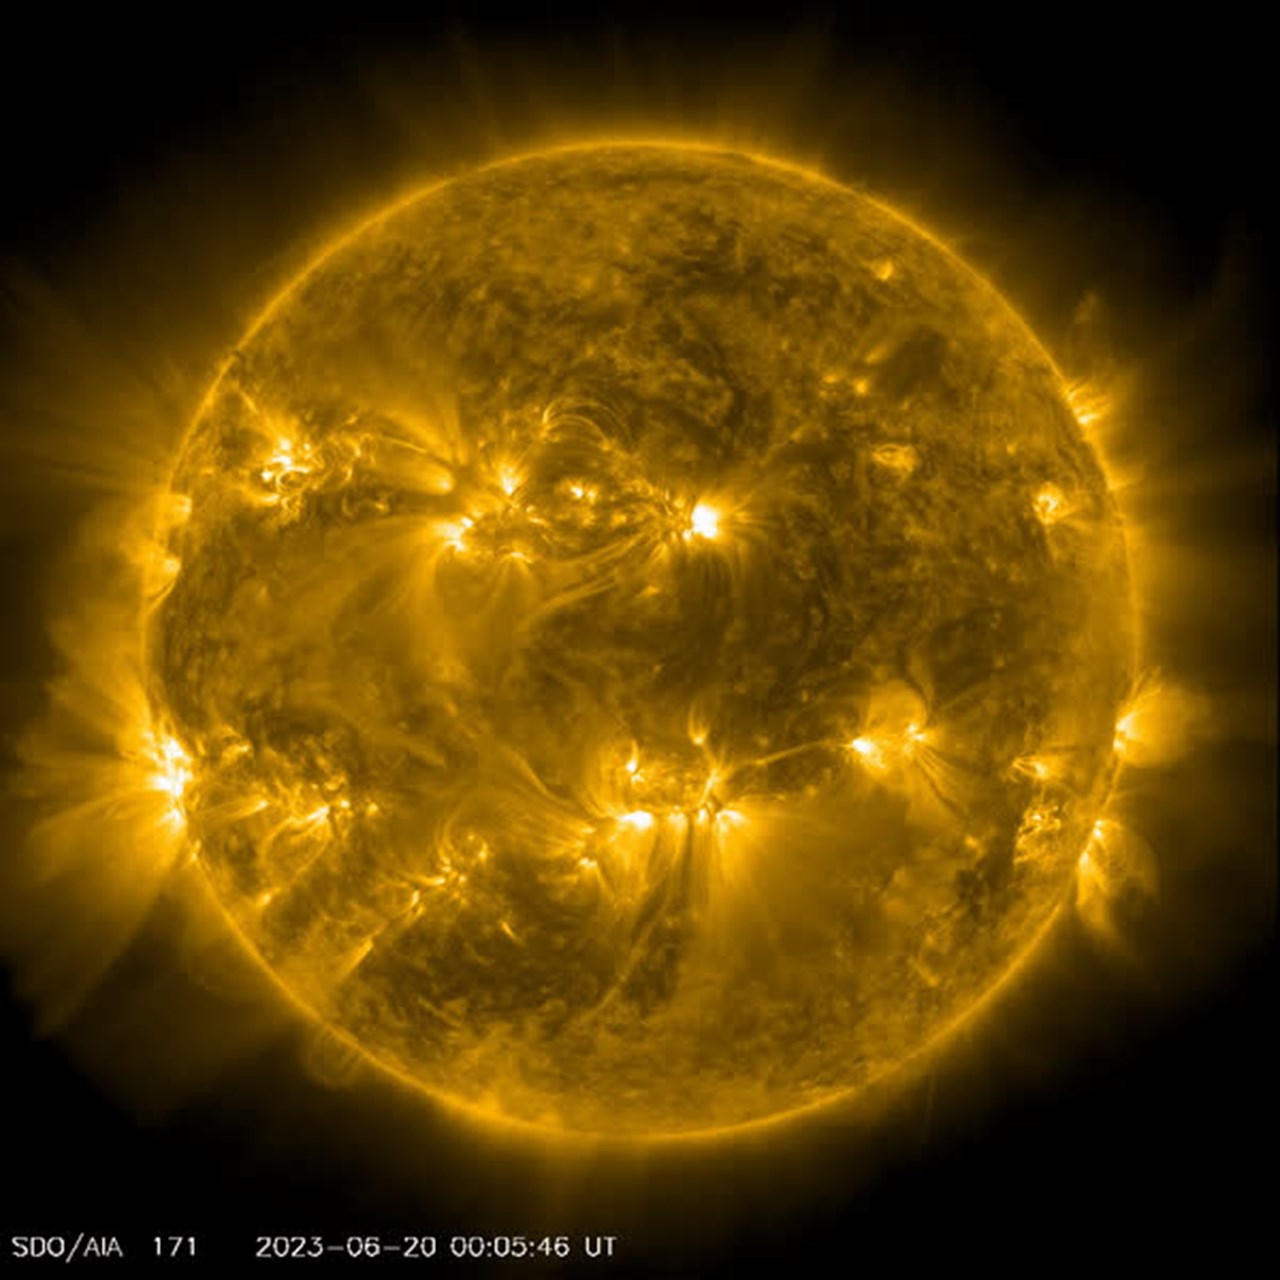 Le soleil émet une forte éruption solaire de classe X ;  Le télescope de la NASA capture une image de l’événement